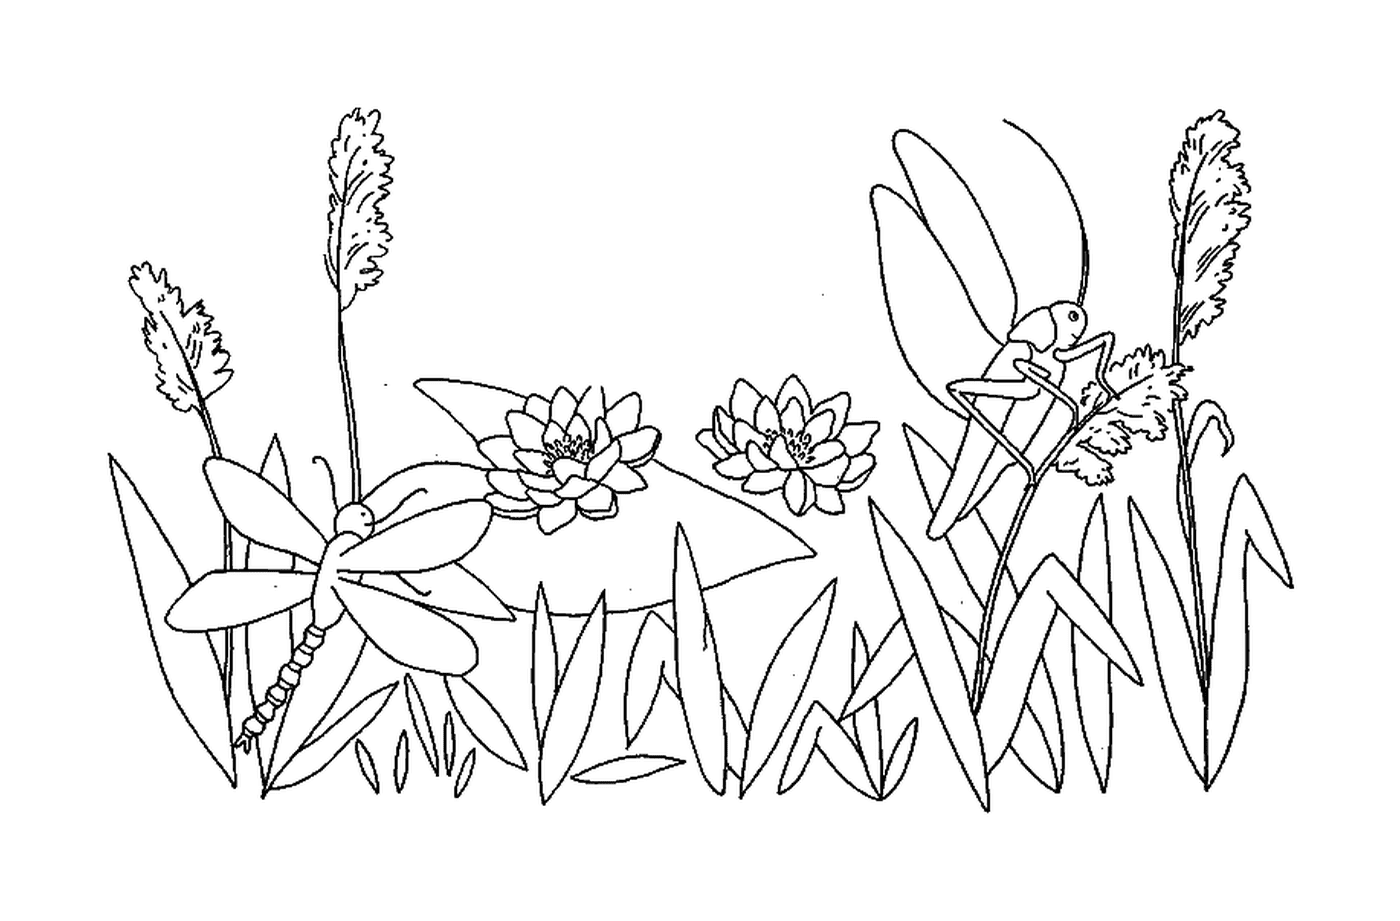  Una libellula e una cavalletta in un giardino fiorito 